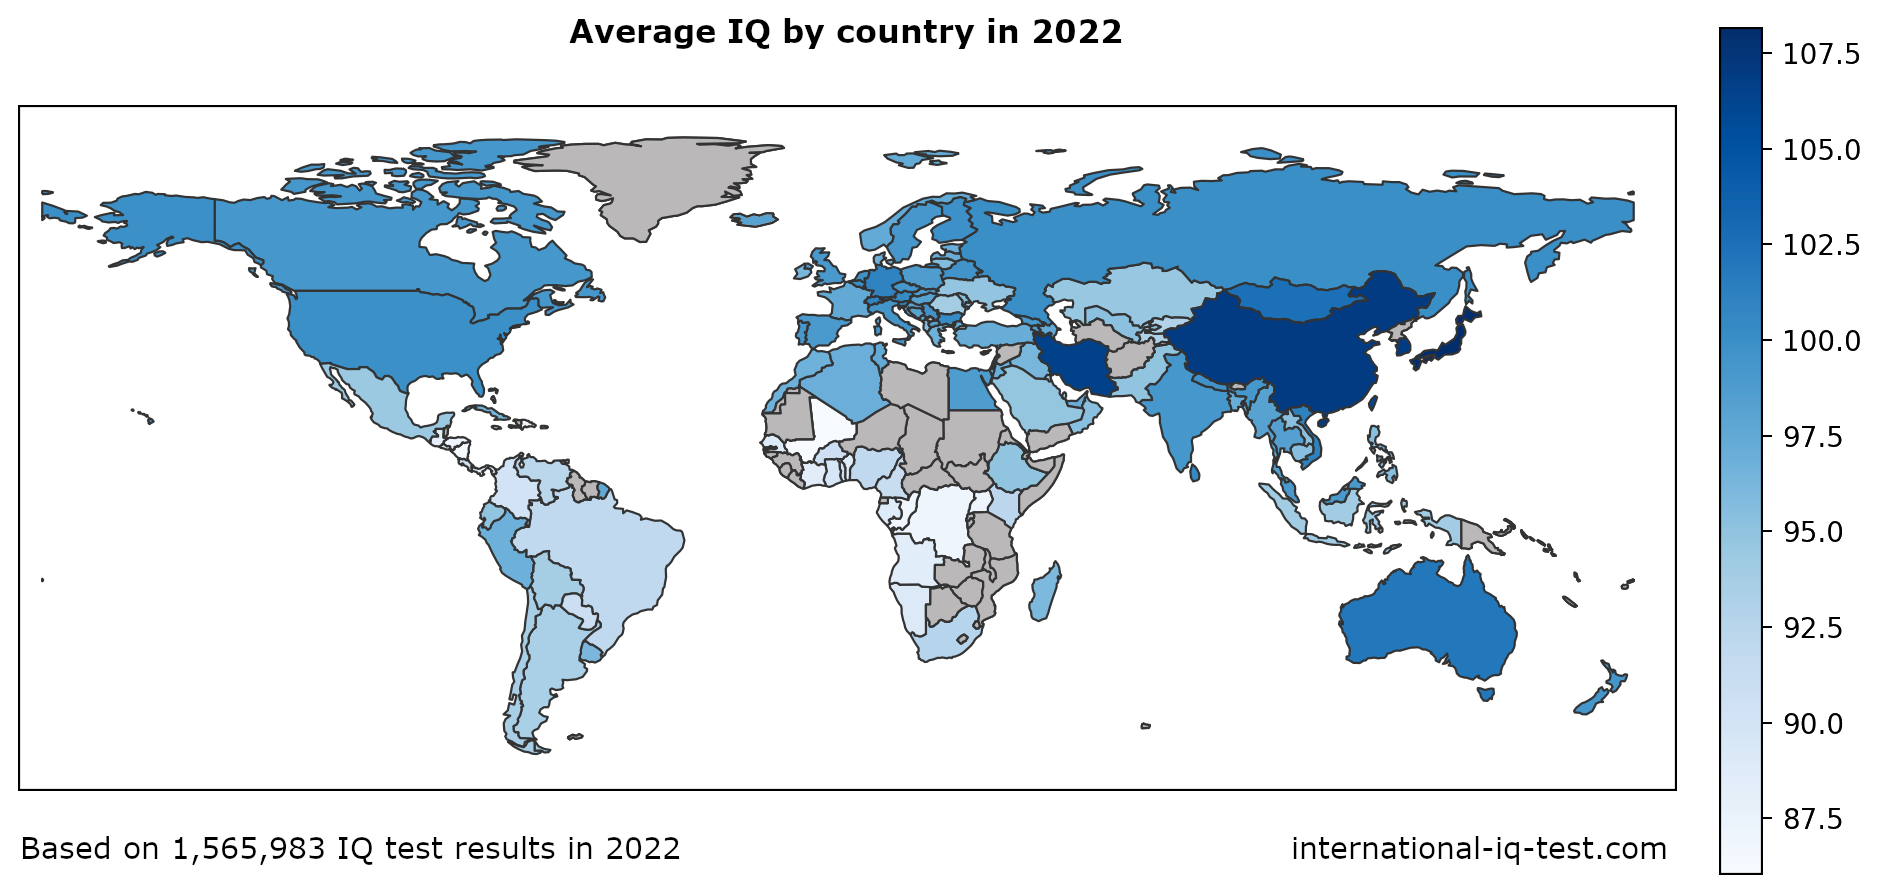 Peta dunia menunjukkan purata IQ setiap negara pada tahun 2022 menggunakan warna biru dari paling ringan hingga paling gelap